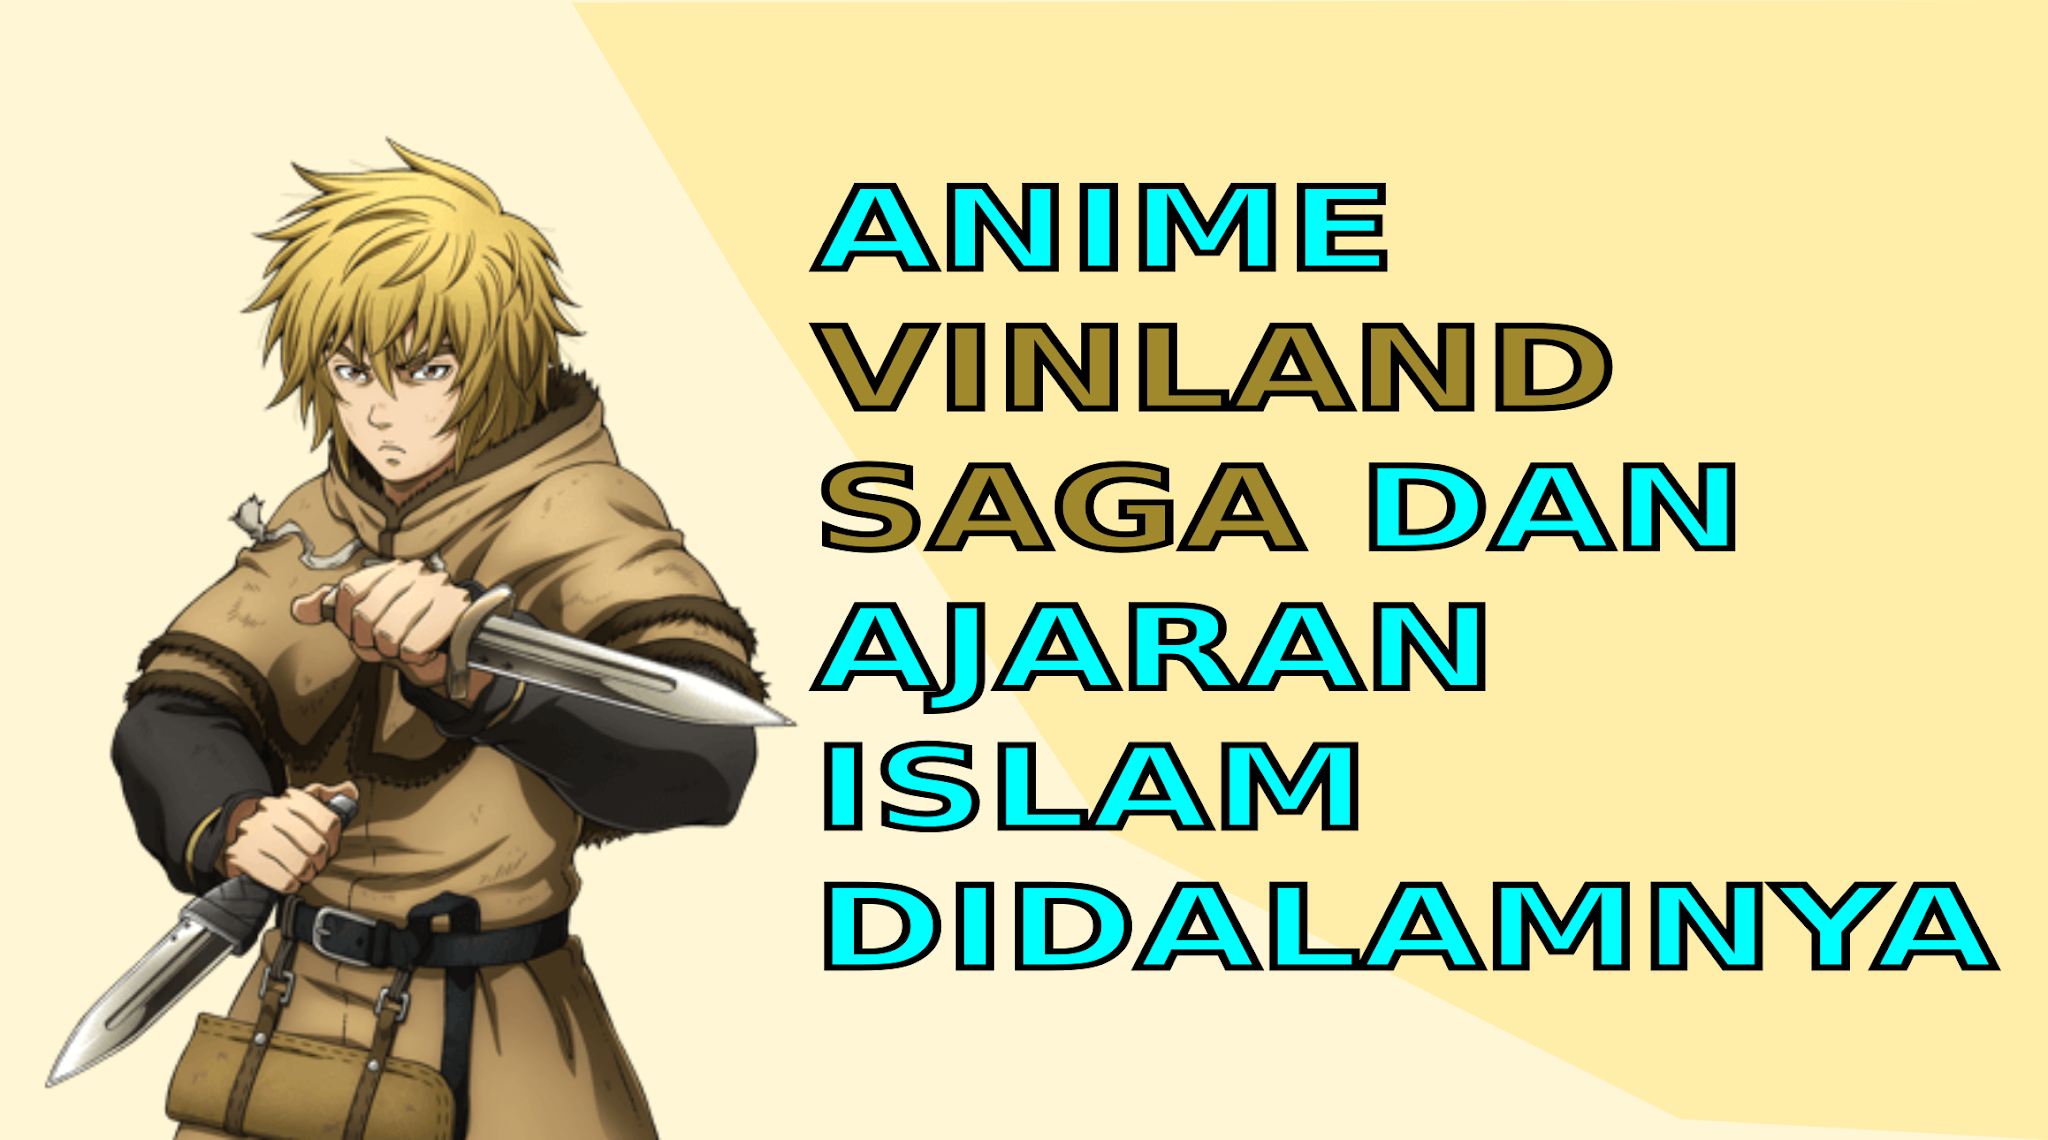 Anime Vinland Saga dan ajaran Islam di dalamnya